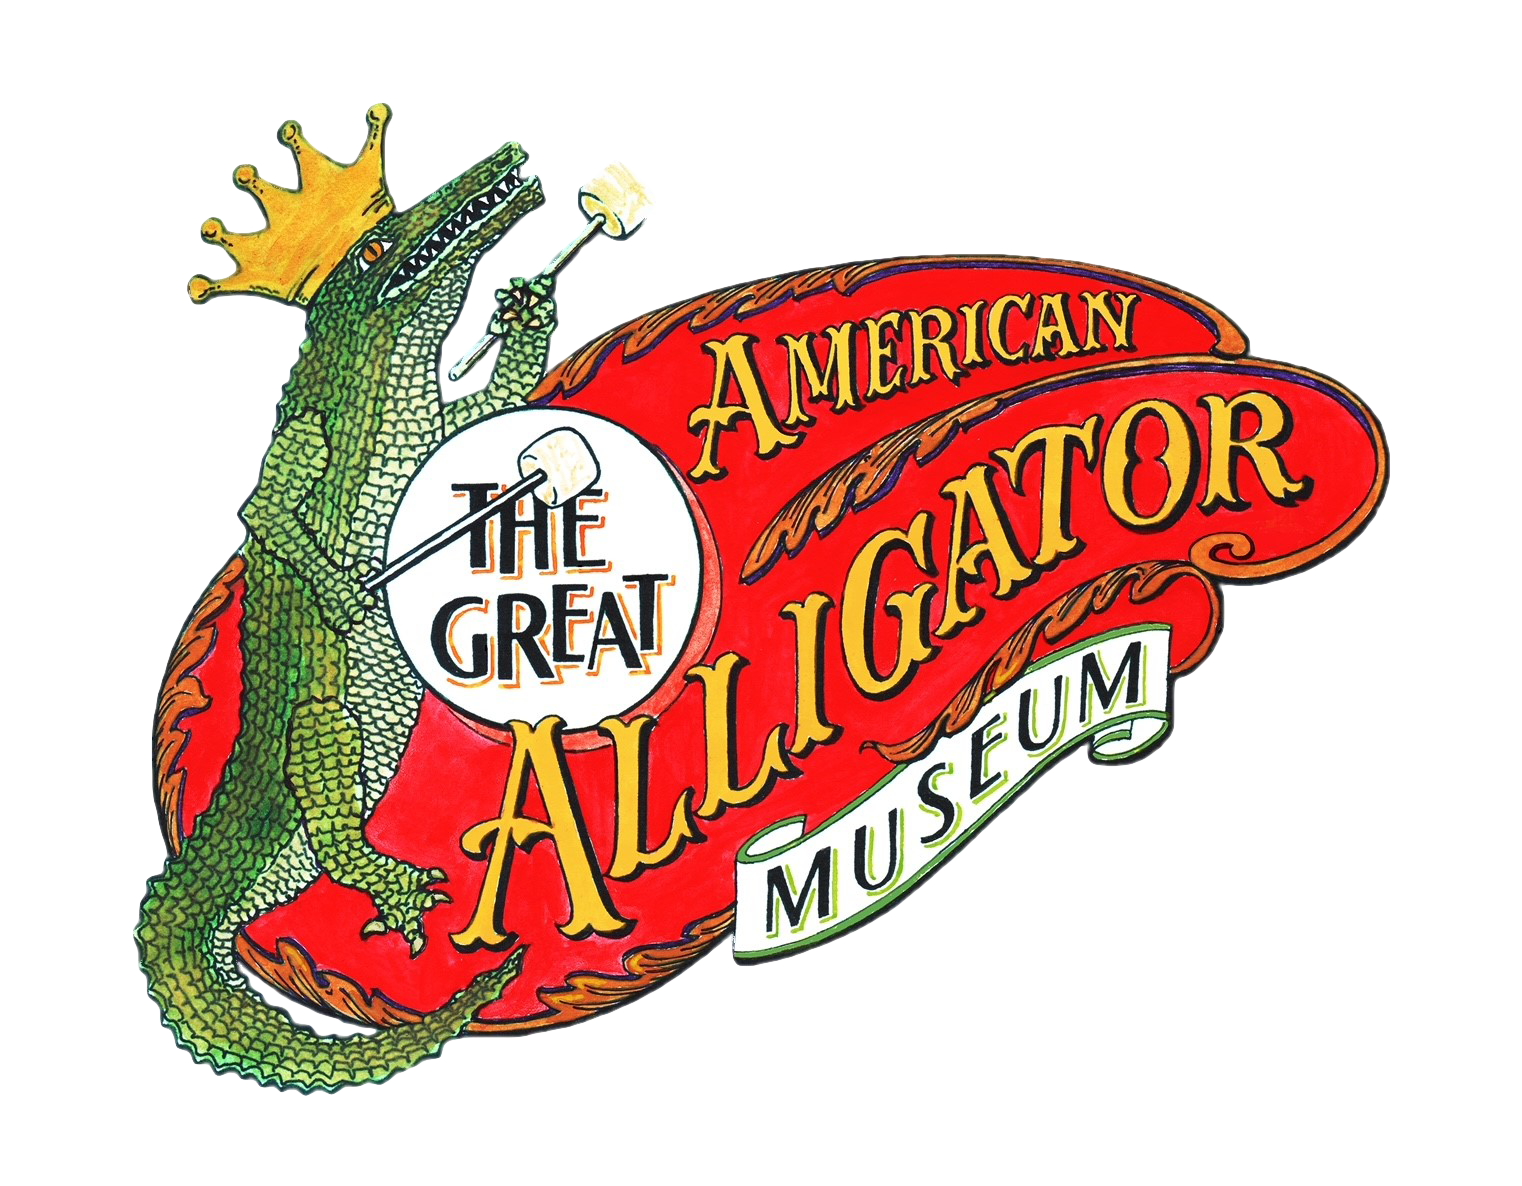 Alligator Museum Donation